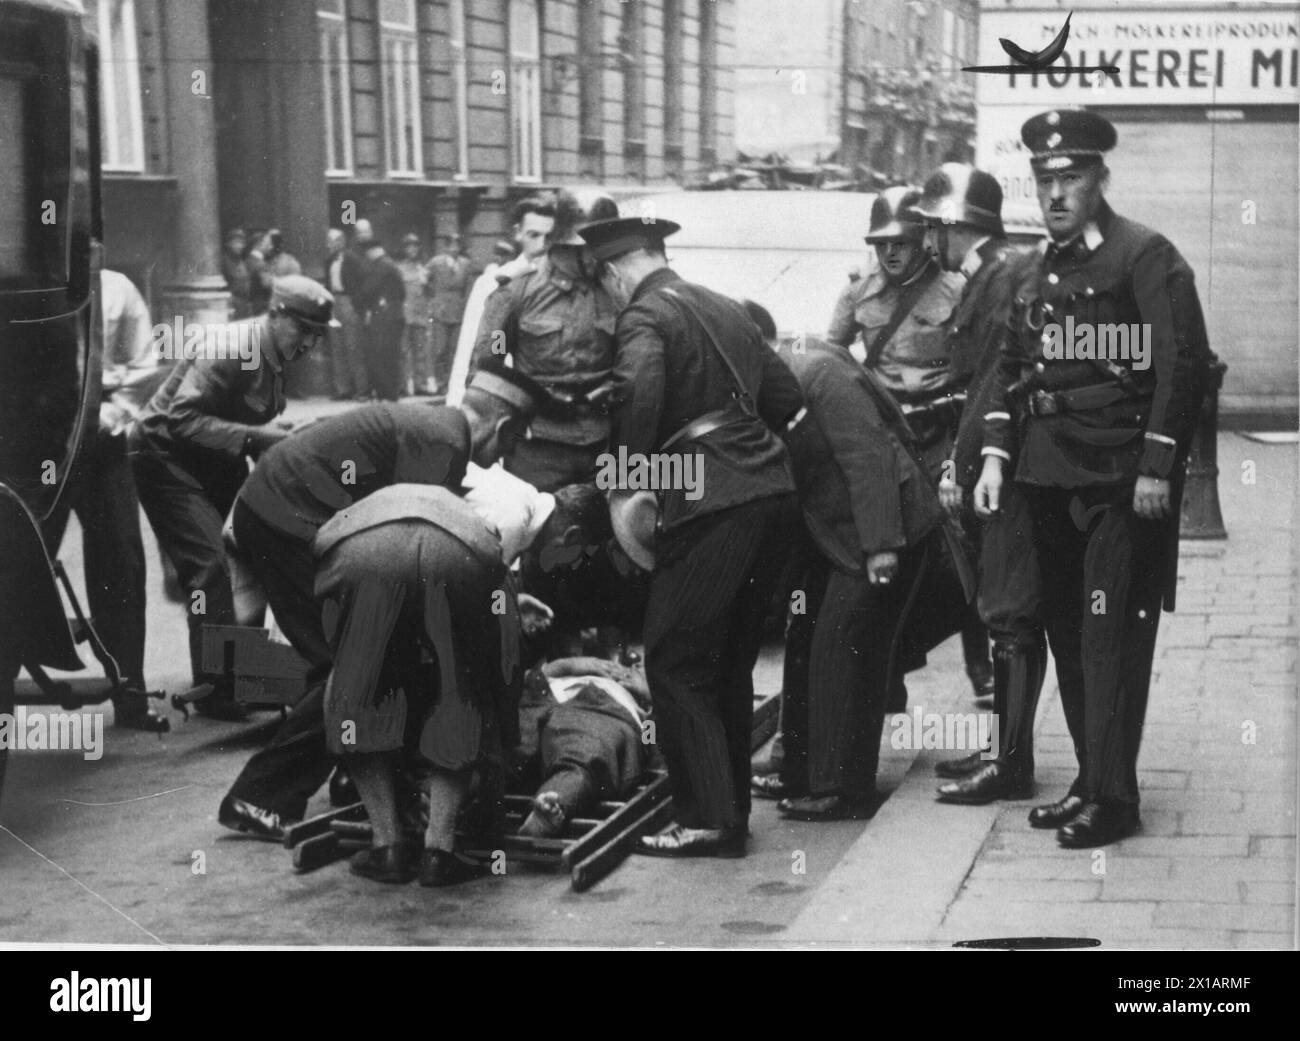 Luglio 1934, agente di stato delle vittime che si trova di fronte all'edificio RAVAG fornito, 25.07.1934 - 19340725 PD0007 - Rechteinfo: Diritti gestiti (RM) Foto Stock